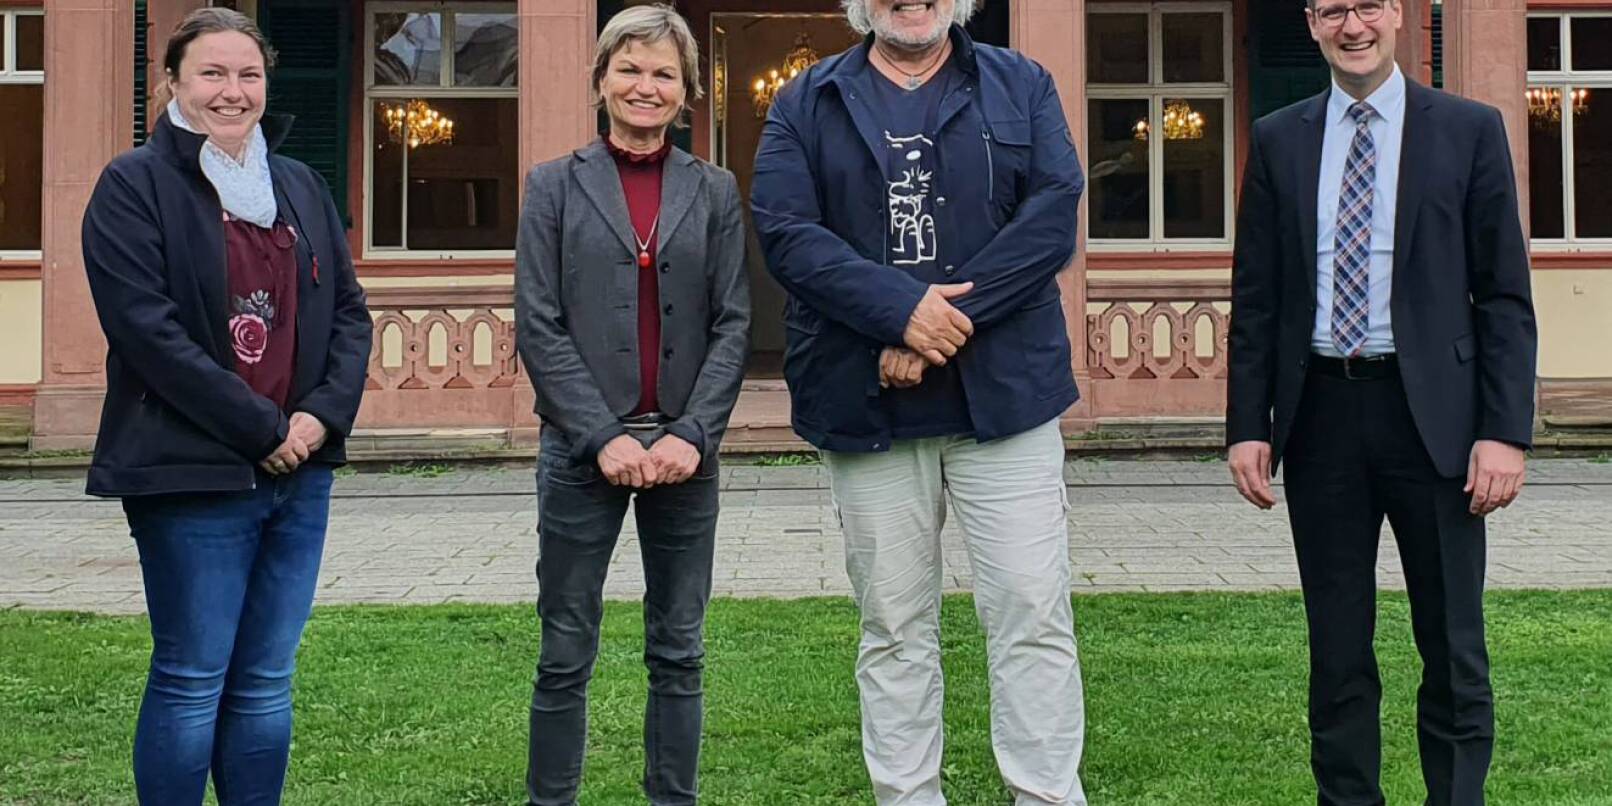 Sabrina Schumacher vom Amt für Immobilienwirtschaft (links) und Oberbürgermeister Manuel Just beglückwünschten die neuen Pächter des Schlossparkrestaurants im Oktober 2022: Juliane Wasser und Arno Kiegele.